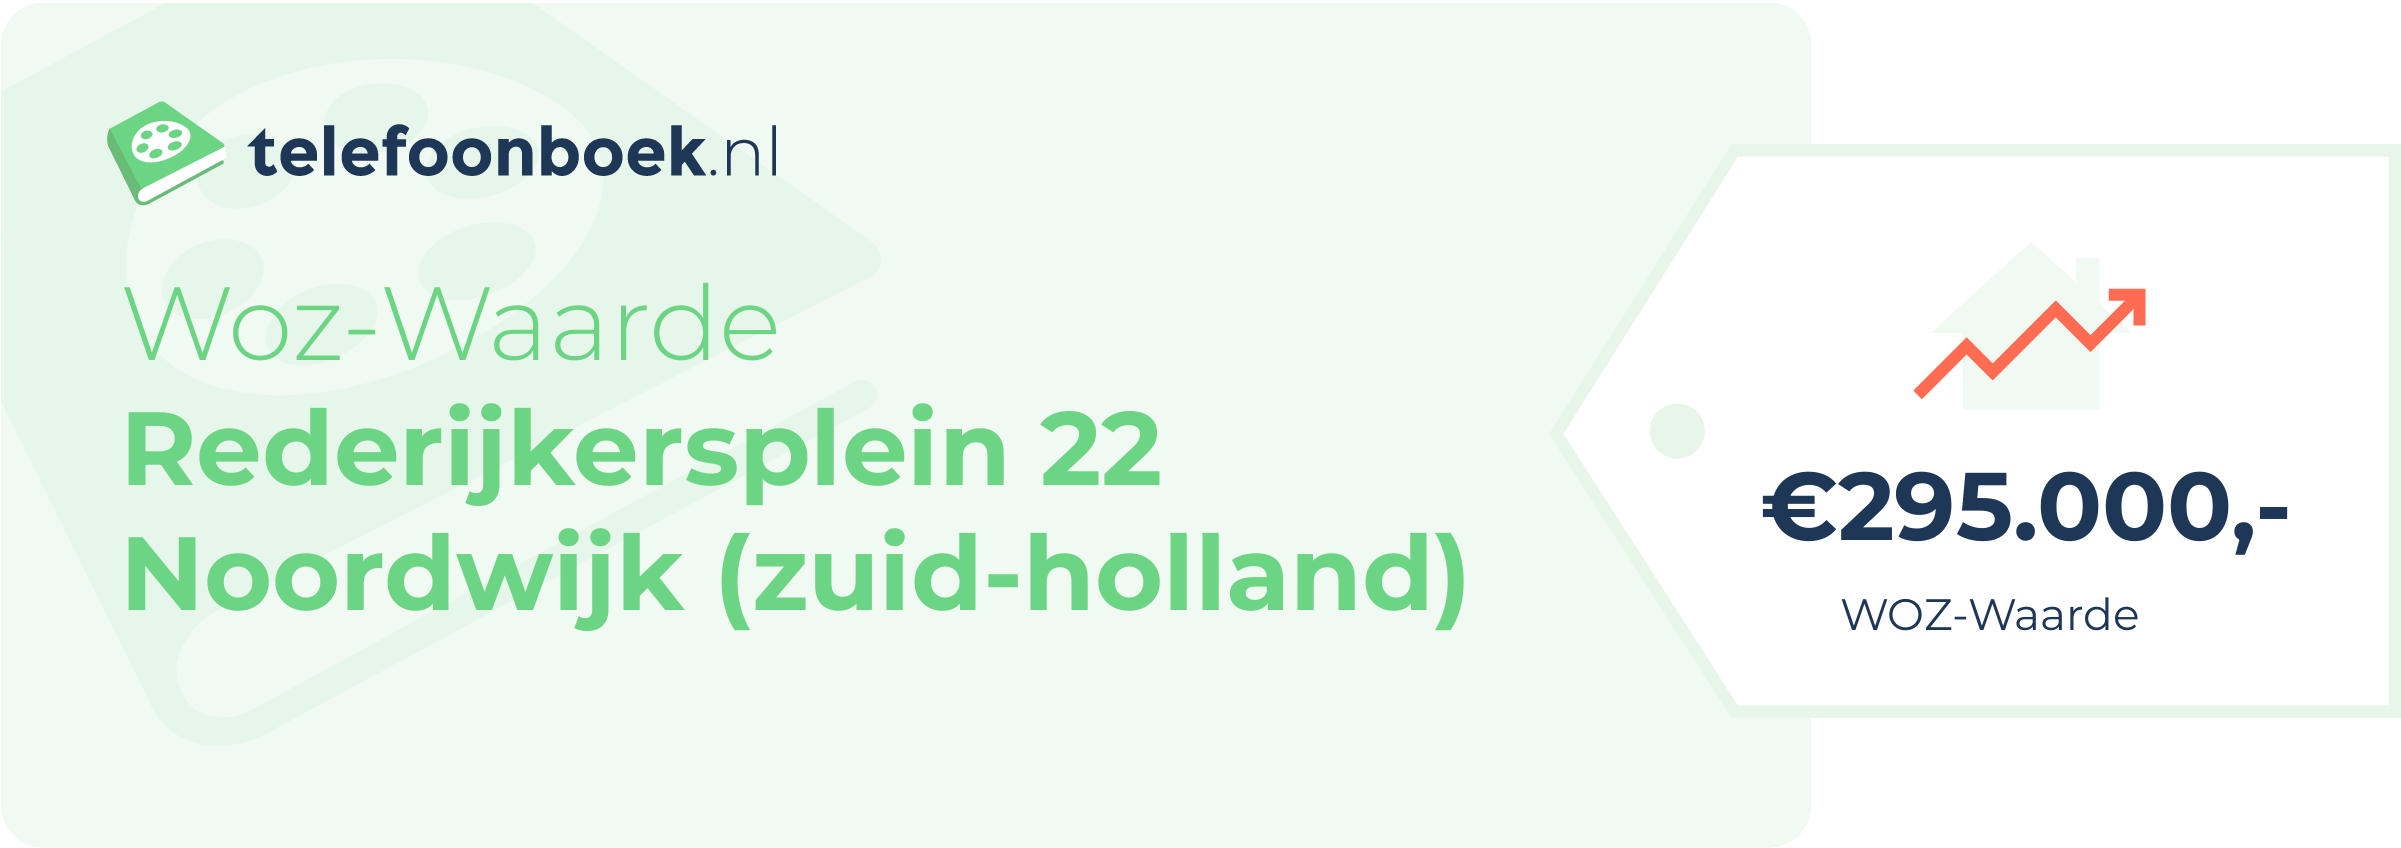 WOZ-waarde Rederijkersplein 22 Noordwijk (Zuid-Holland)